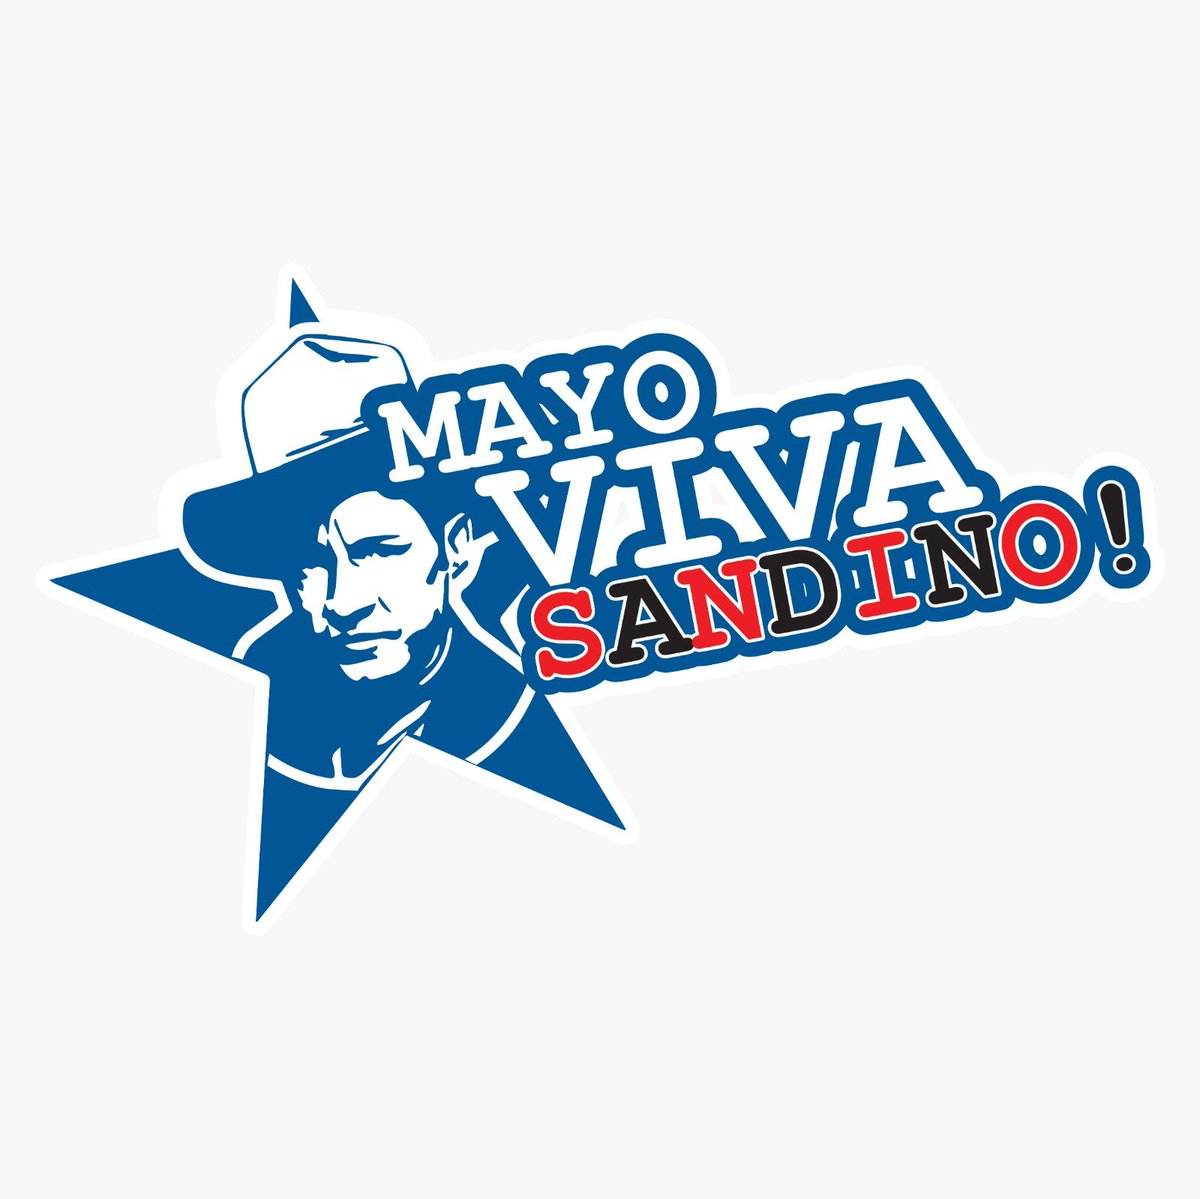 #1Mayo2023

Buenos dias!!
Damos la Bienvenida al mes de  Mayo
Con alegria celebrando El Dia Internacional de Los Trabajadores!!
@TE2021

 #MayoVivaSandino